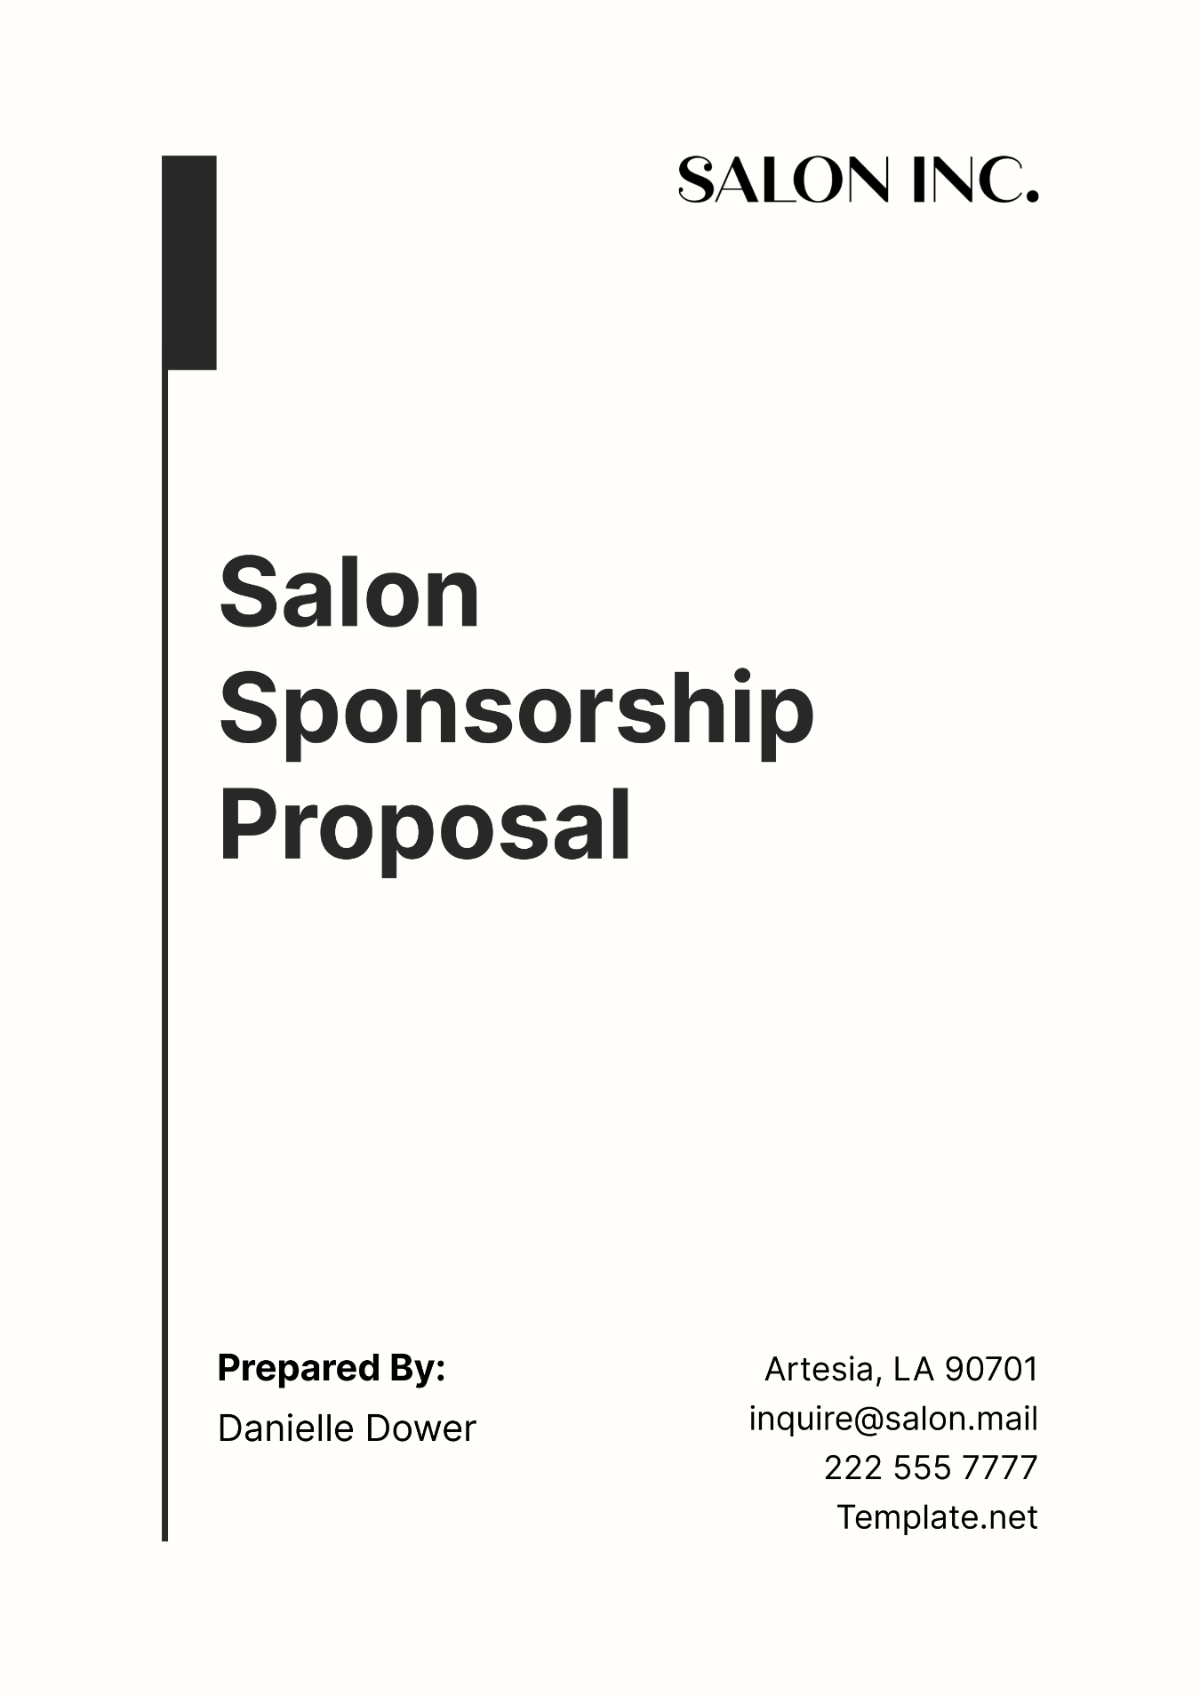 Free Salon Sponsorship Proposal Template